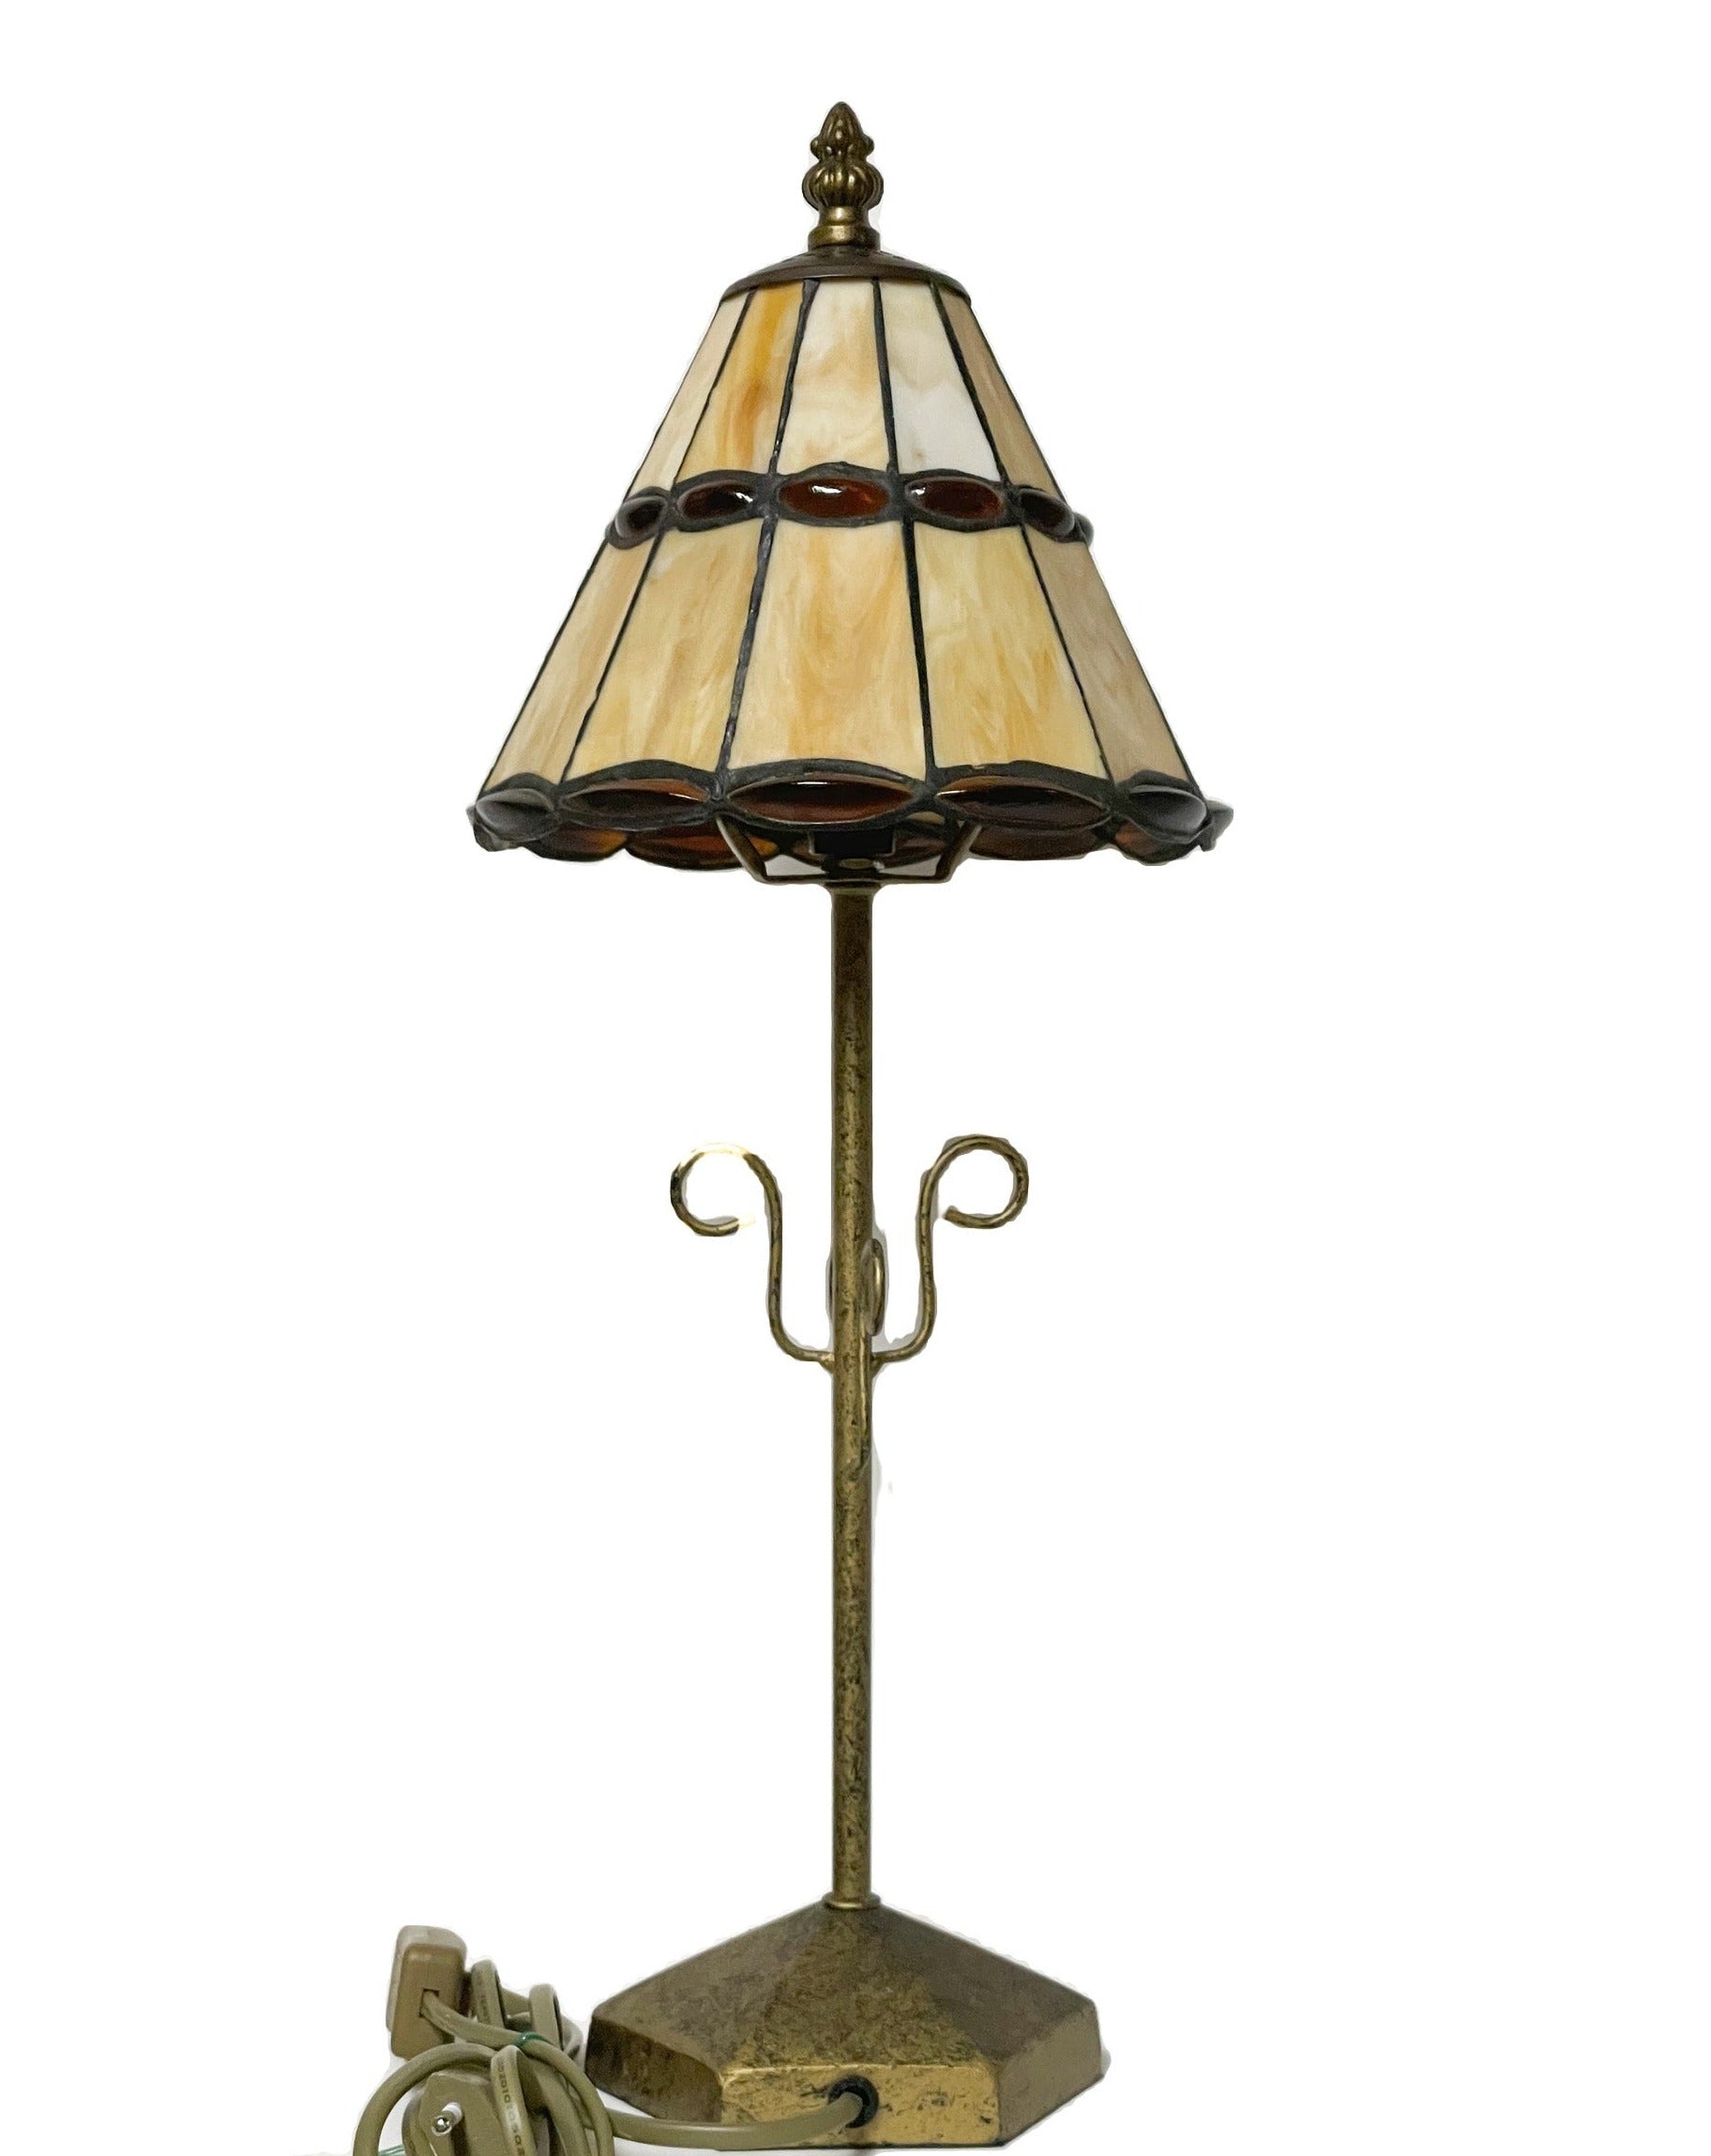 Vintage Art-Deco lamp